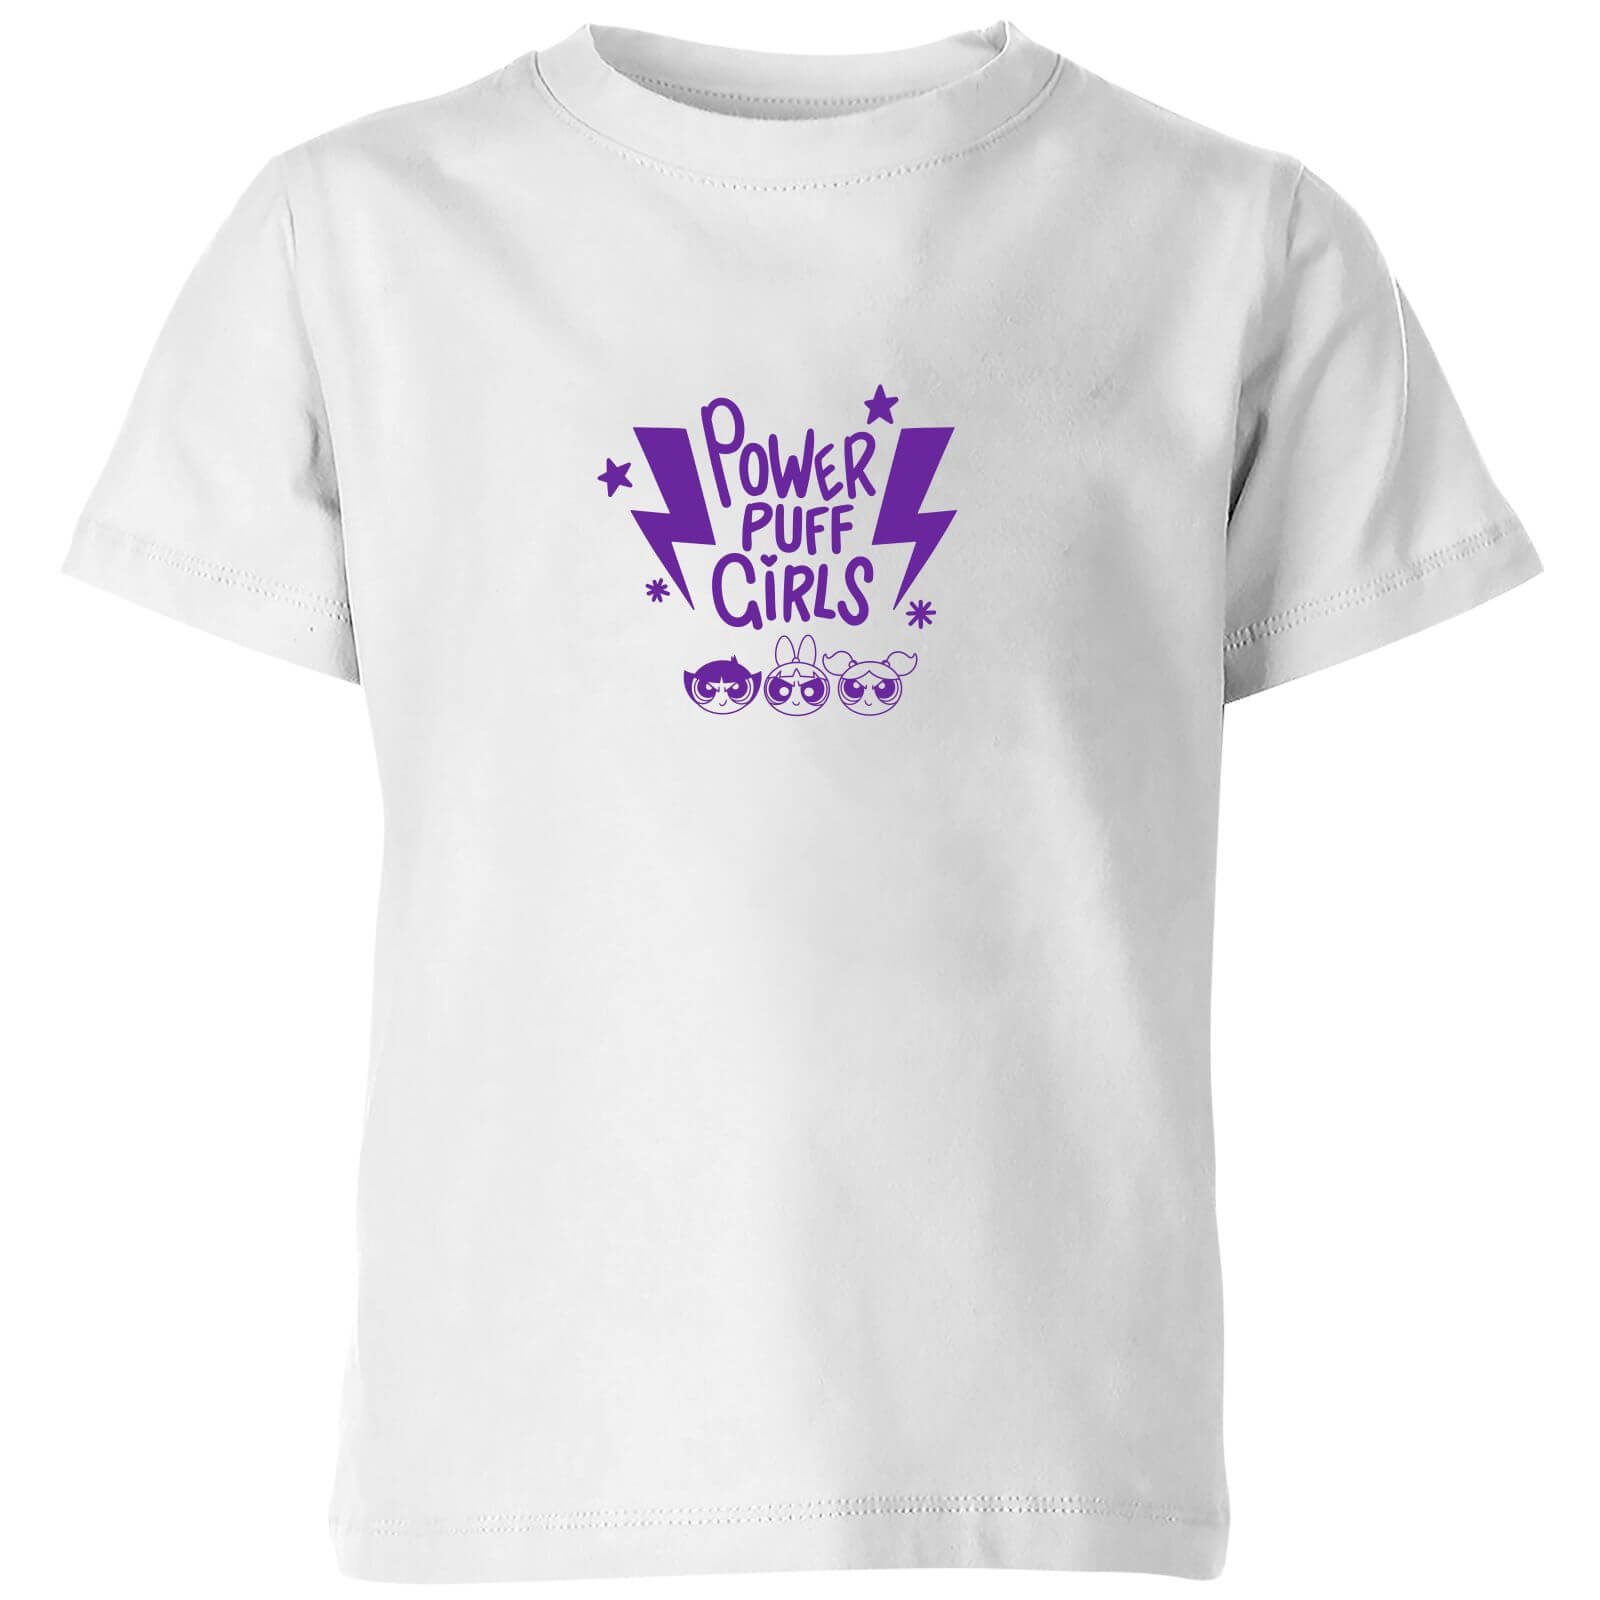 The Powerpuff Girls Thunderbolts Kids' T-Shirt - White - 3-4 Years - White